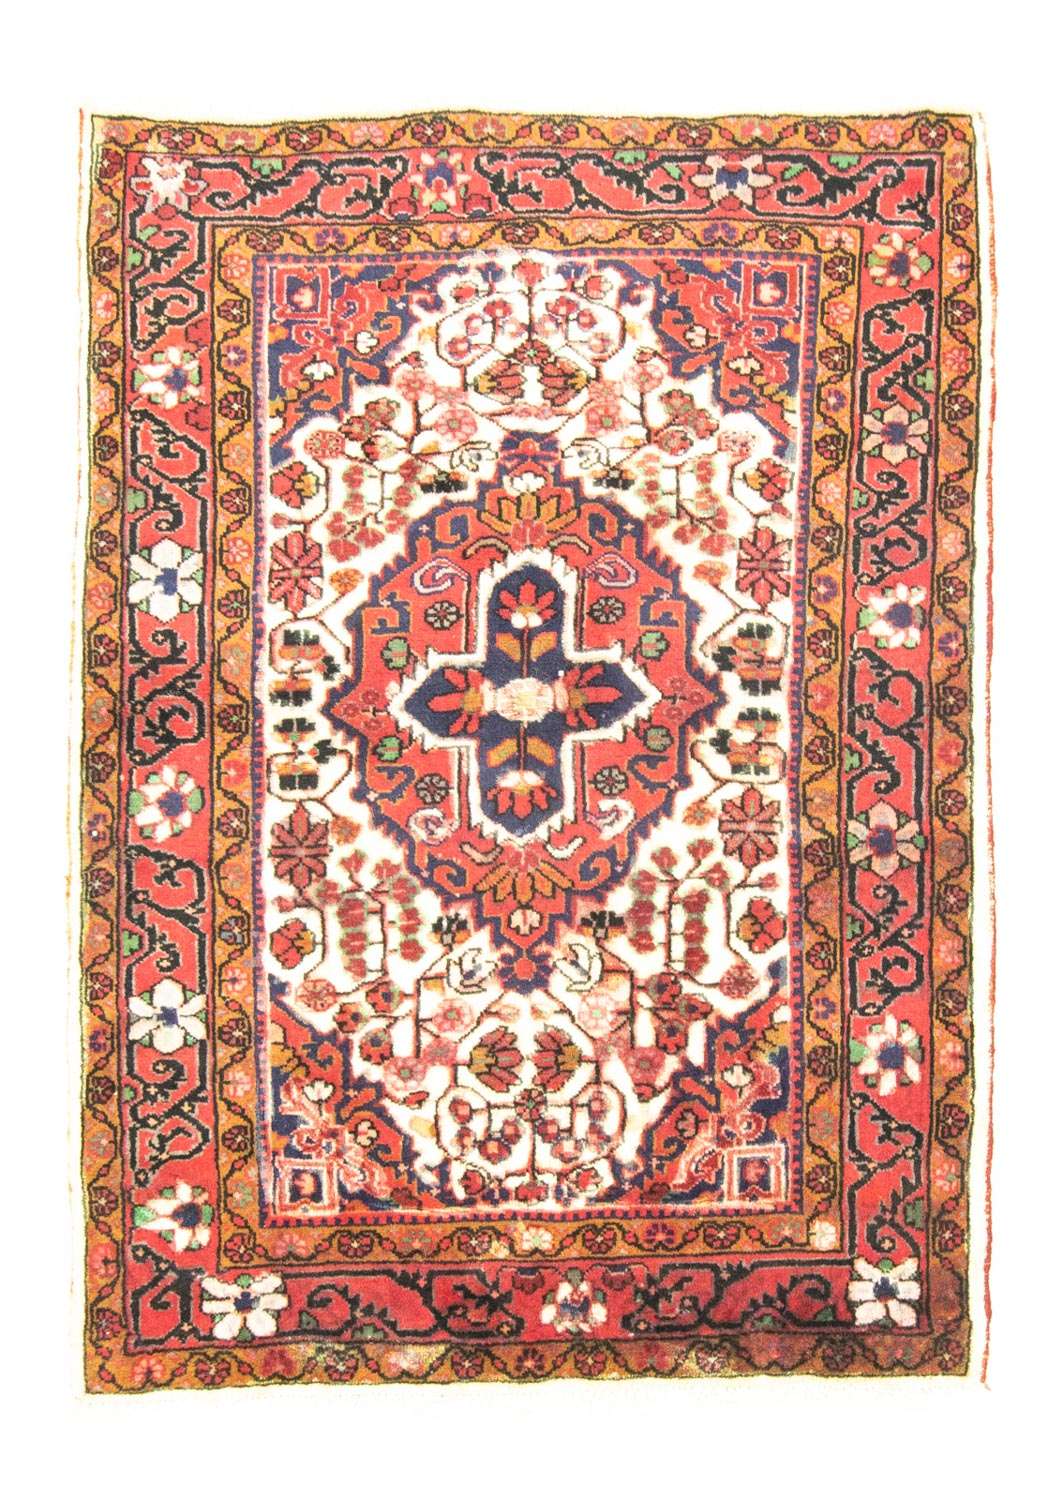 Tapis persan - Nomadic - 140 x 100 cm - beige